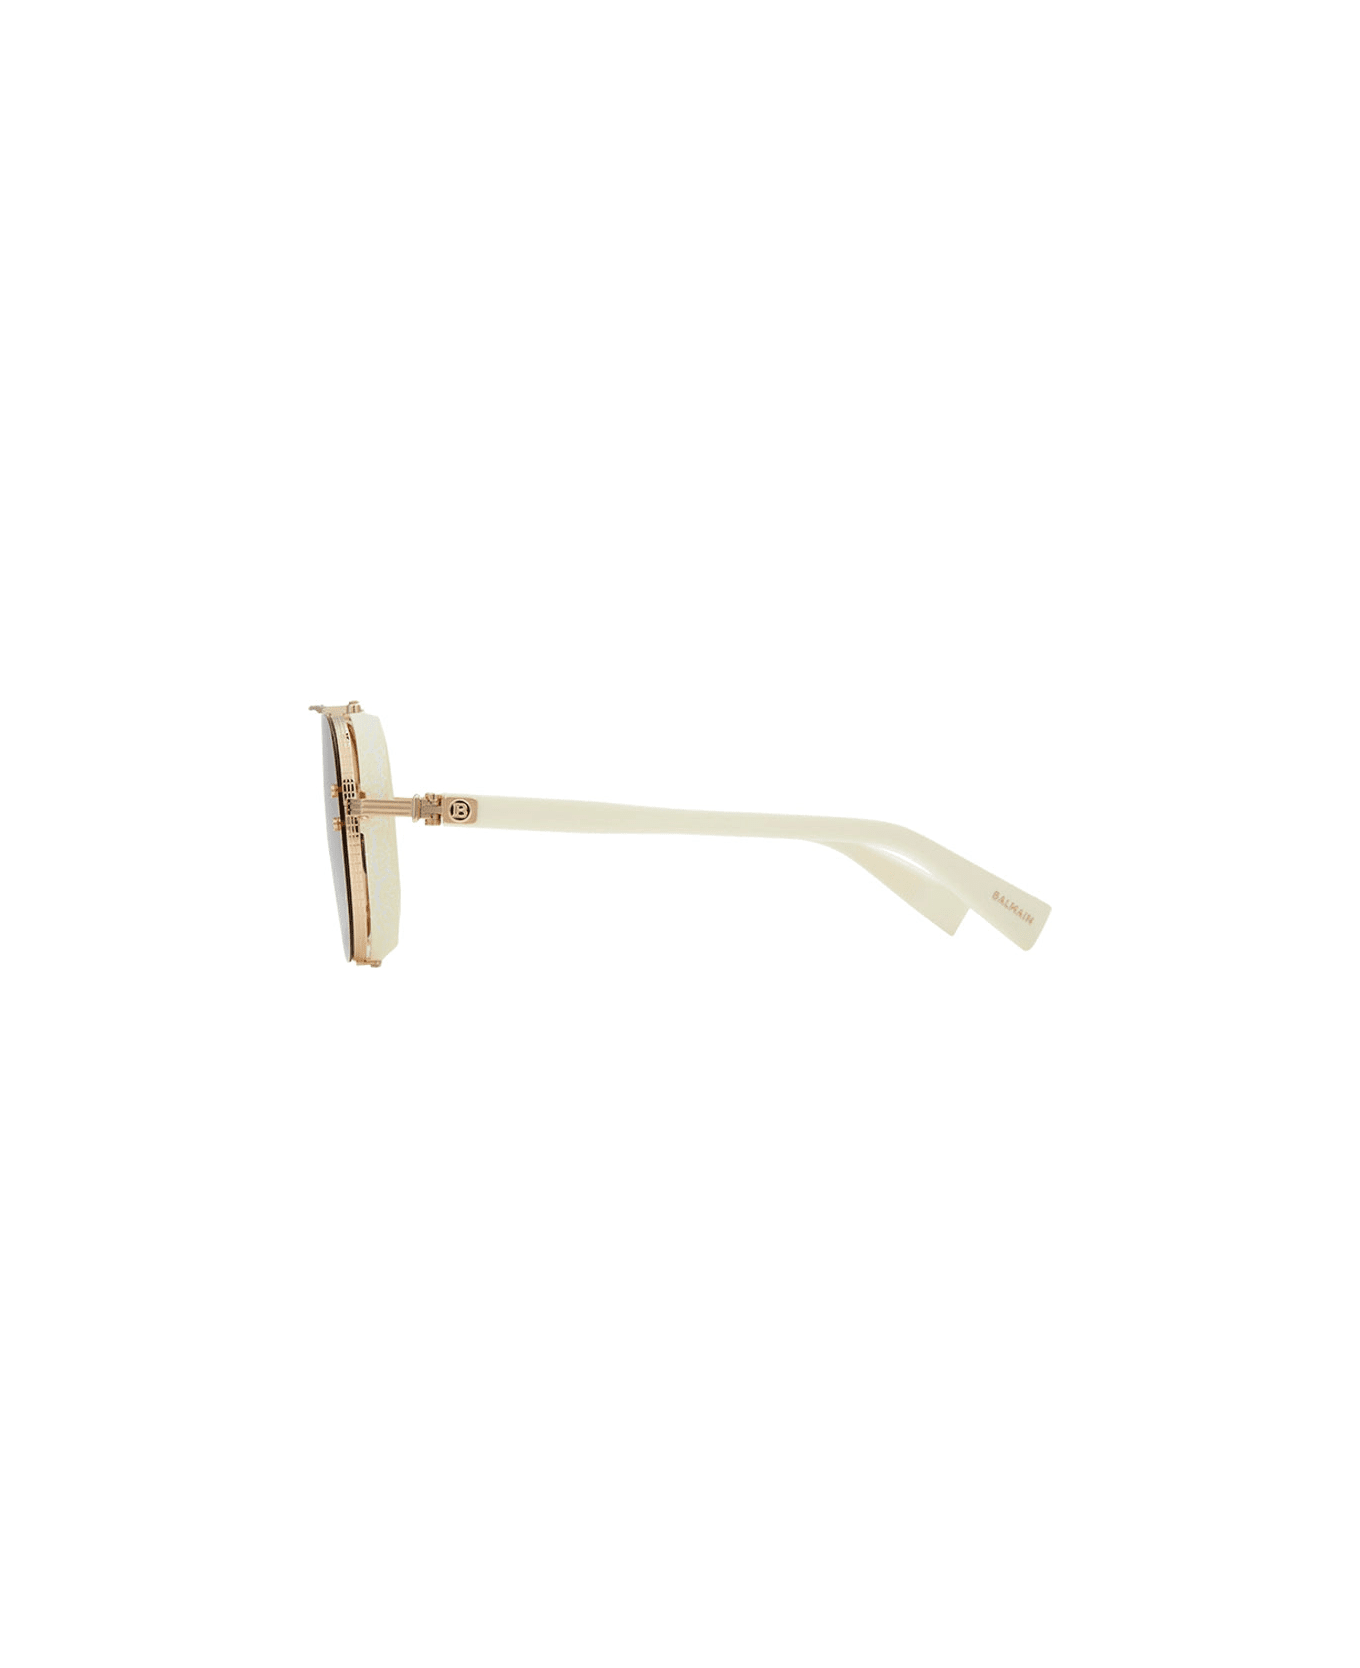 Balmain Captaine - Gold/white Sunglasses Sunglasses - gold, white bone